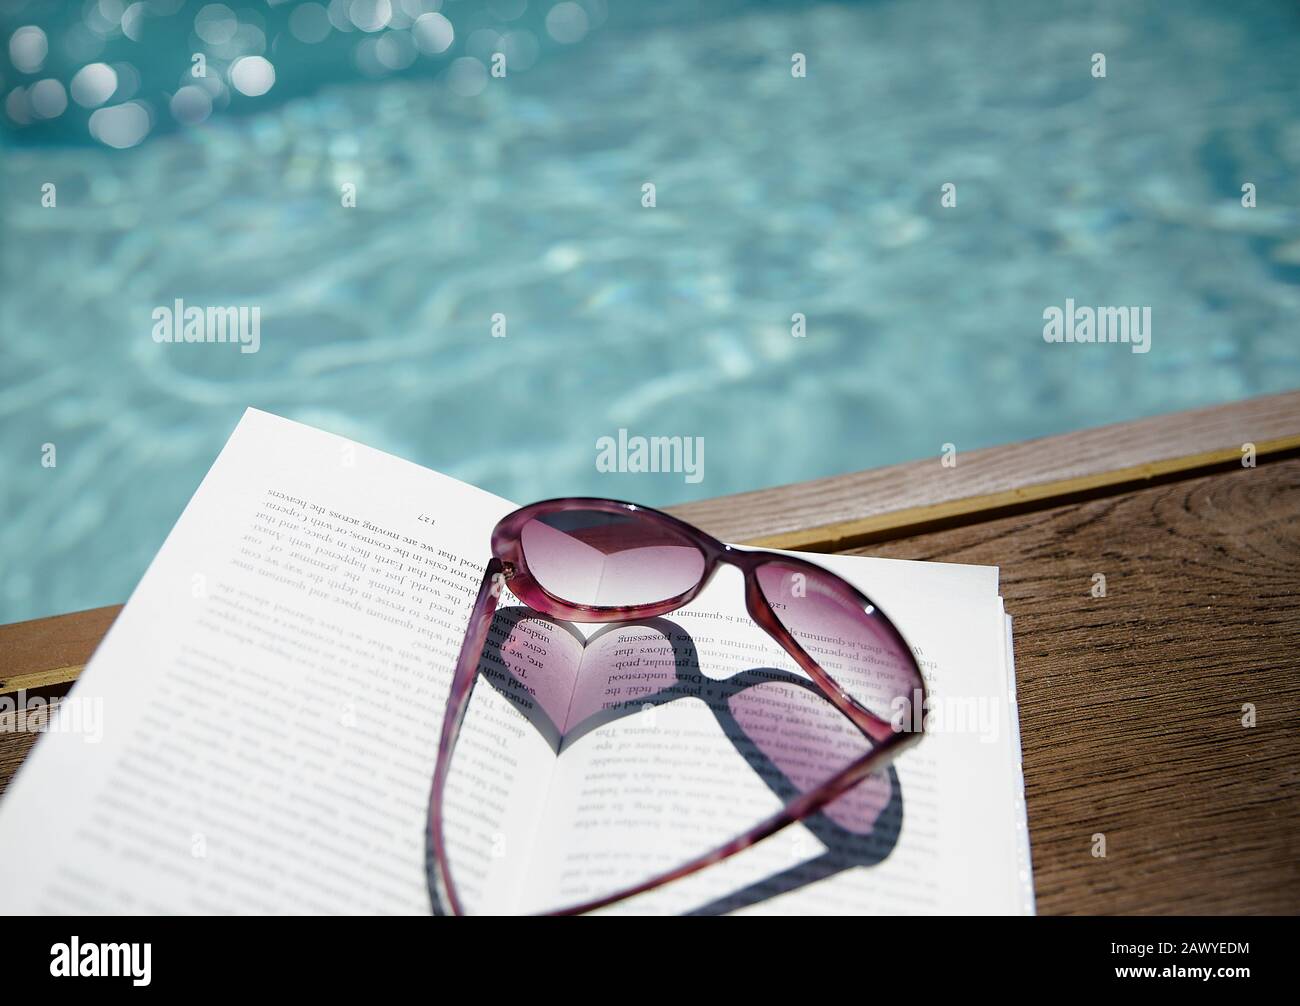 Lunettes de soleil en forme de coeur sur le livre au bord de la piscine ensoleillée Banque D'Images